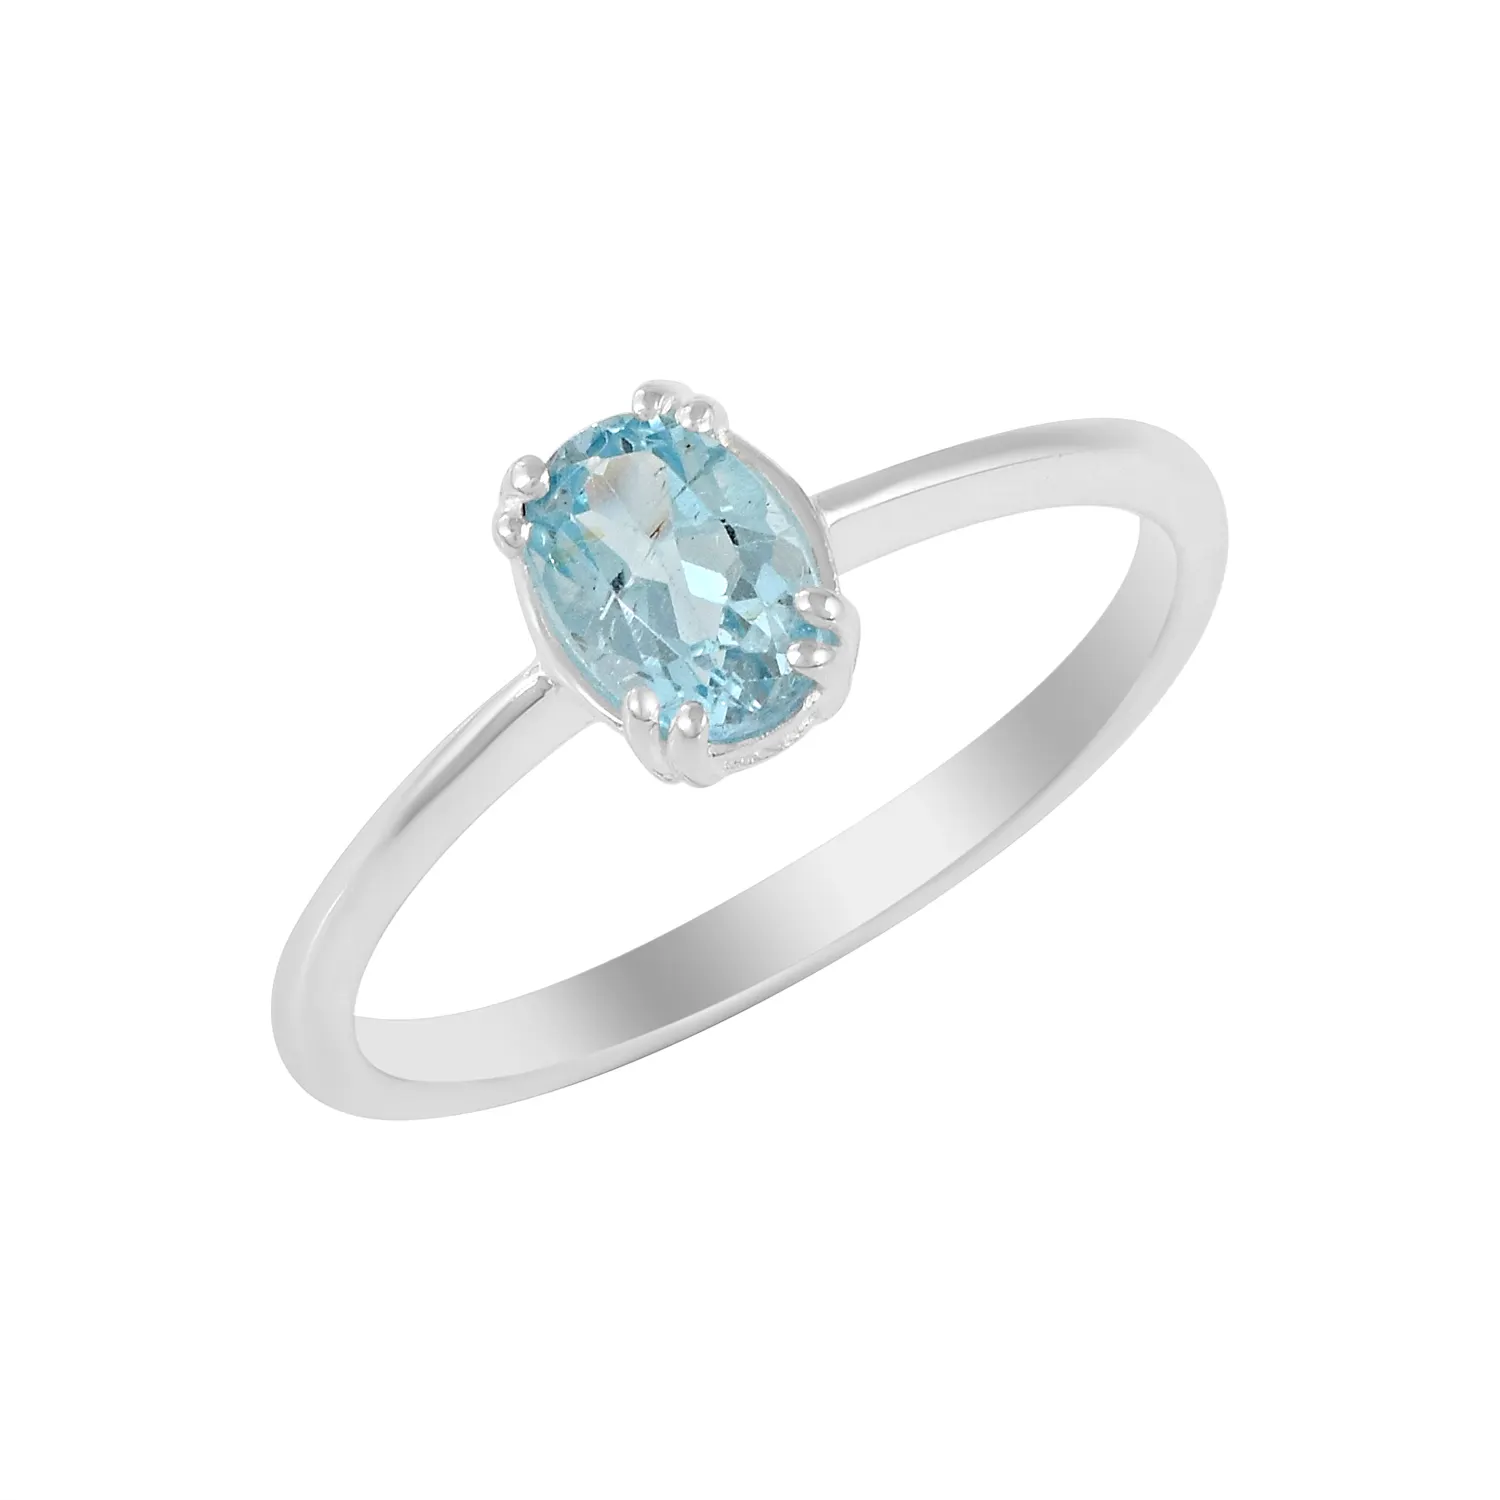 925เงินสเตอร์ลิงผู้ค้าส่งที่ดีที่สุดขายแหวน Solitaire ธรรมชาติสีฟ้าพลอยบุษราคัมแนวโน้ม Dainty ผู้หญิงผู้ผลิตเครื่องประดับ